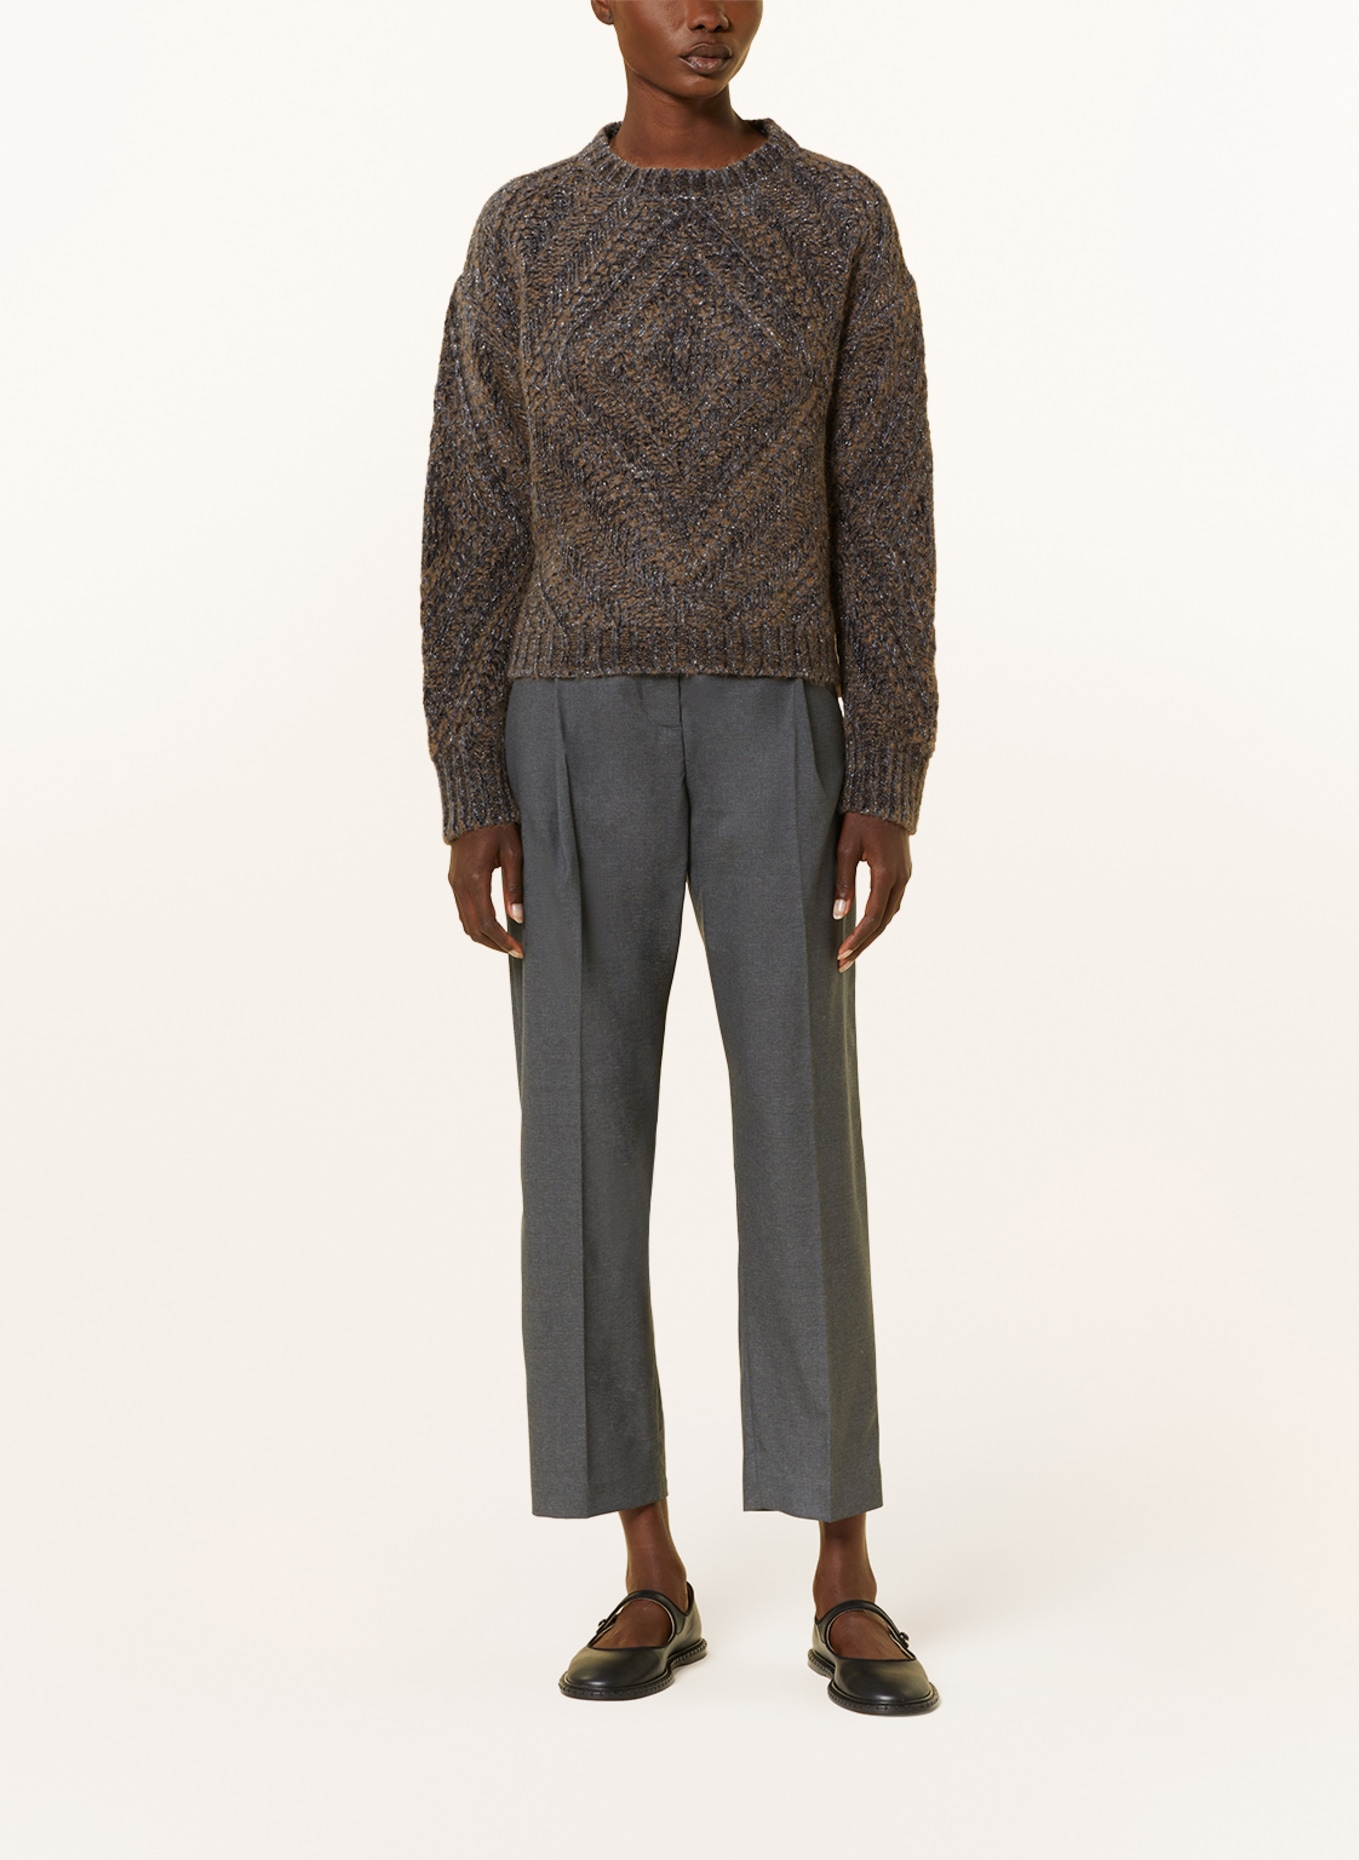 FABIANA FILIPPI Sweater with glitter thread, Color: DARK GRAY/ BROWN (Image 2)